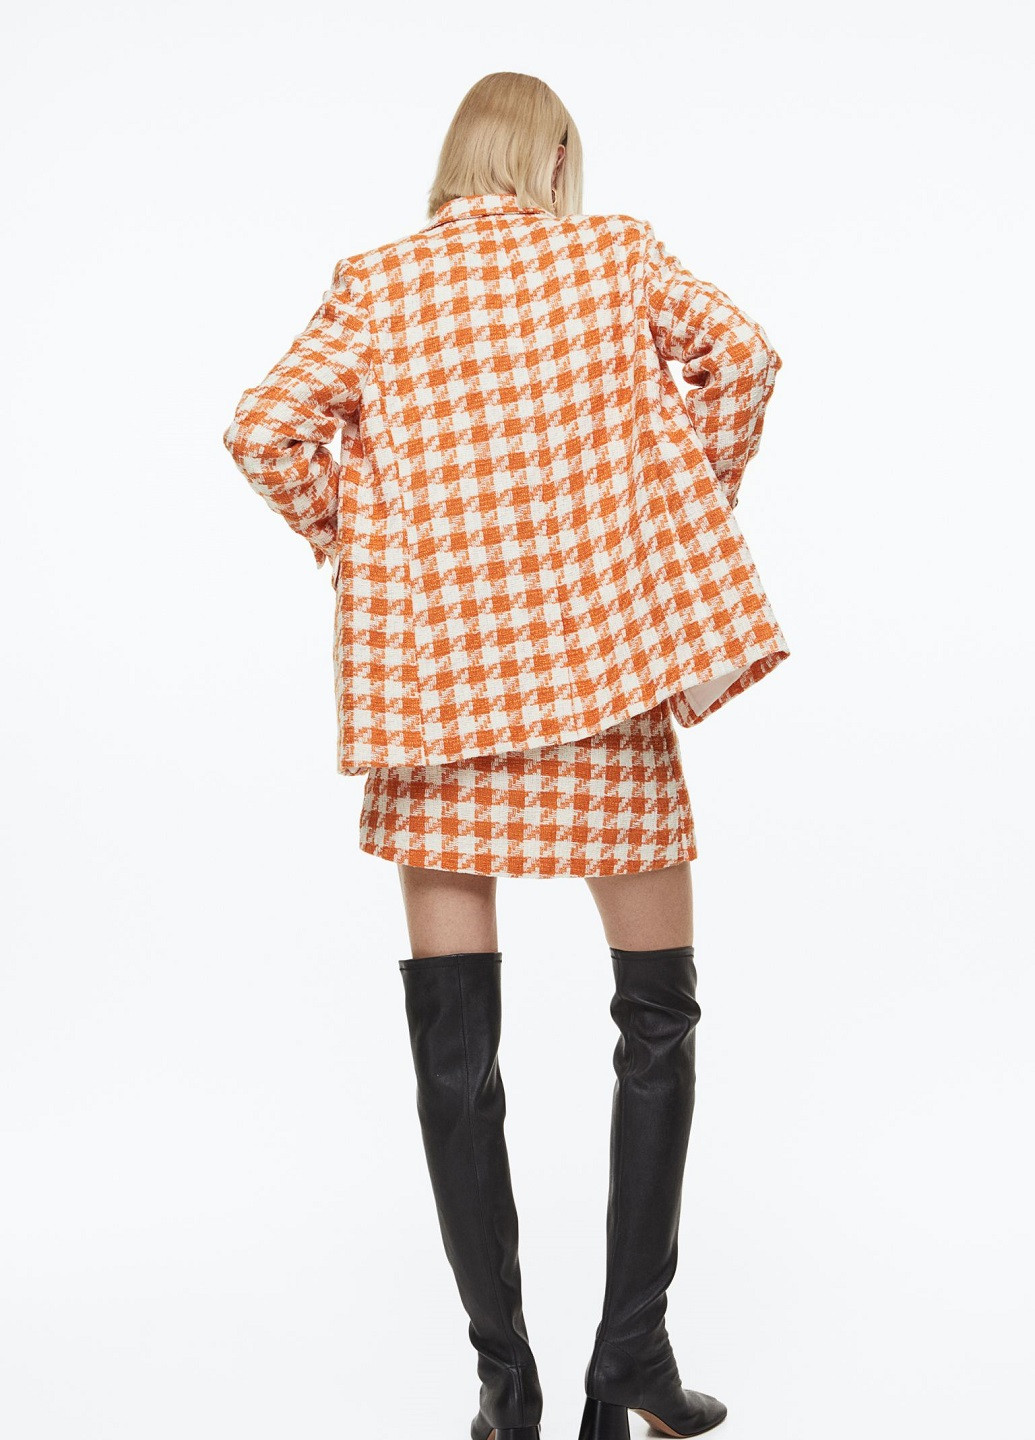 Оранжевый женский жакет H&M с узором пье-де-пуль «гусиная лапка» - демисезонный